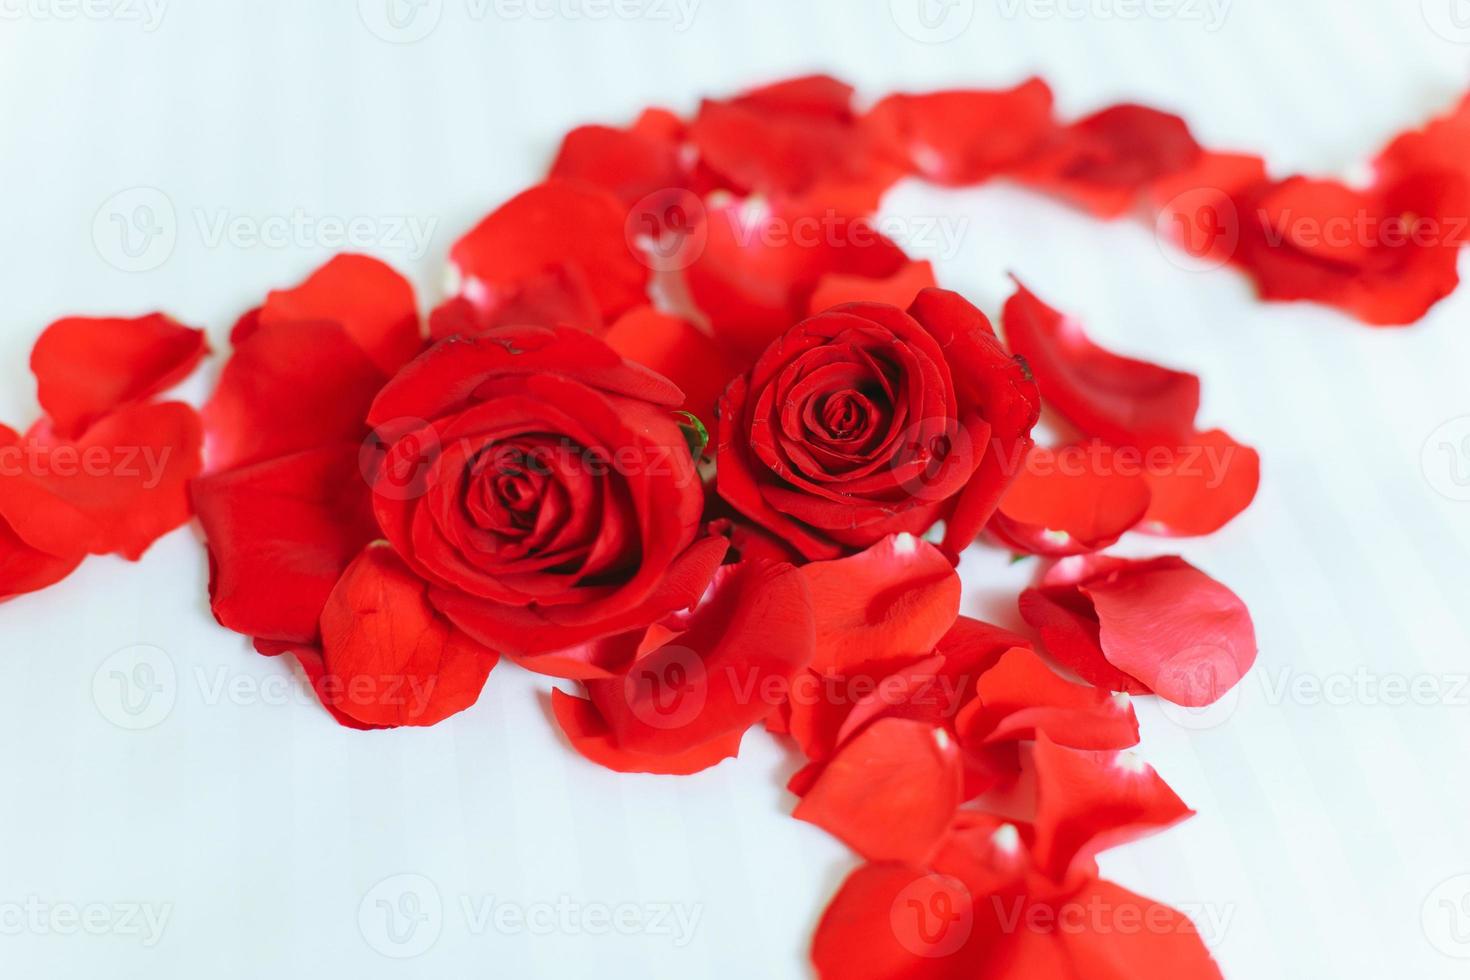 dos rosas rojas con pétalos de rosa en fondo blanco foto